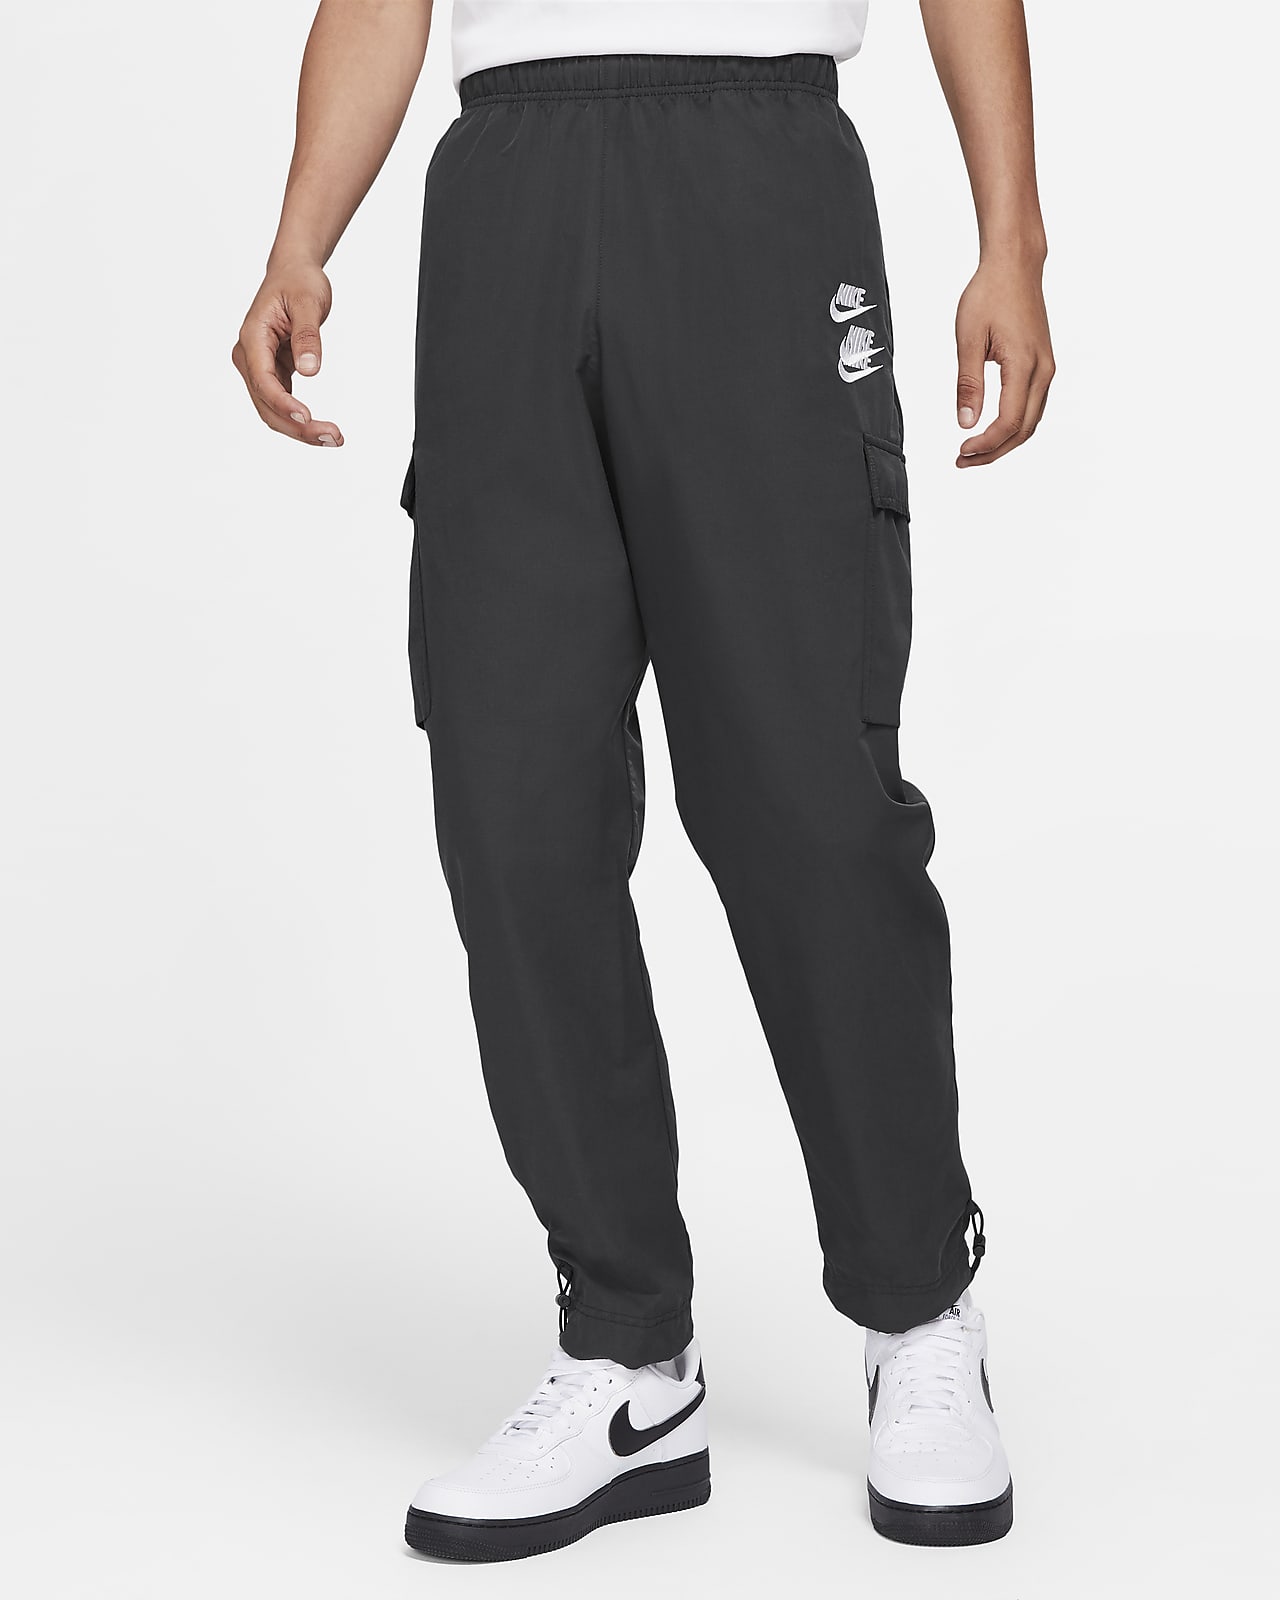 Nike Sportswear 男子梭织工装长裤